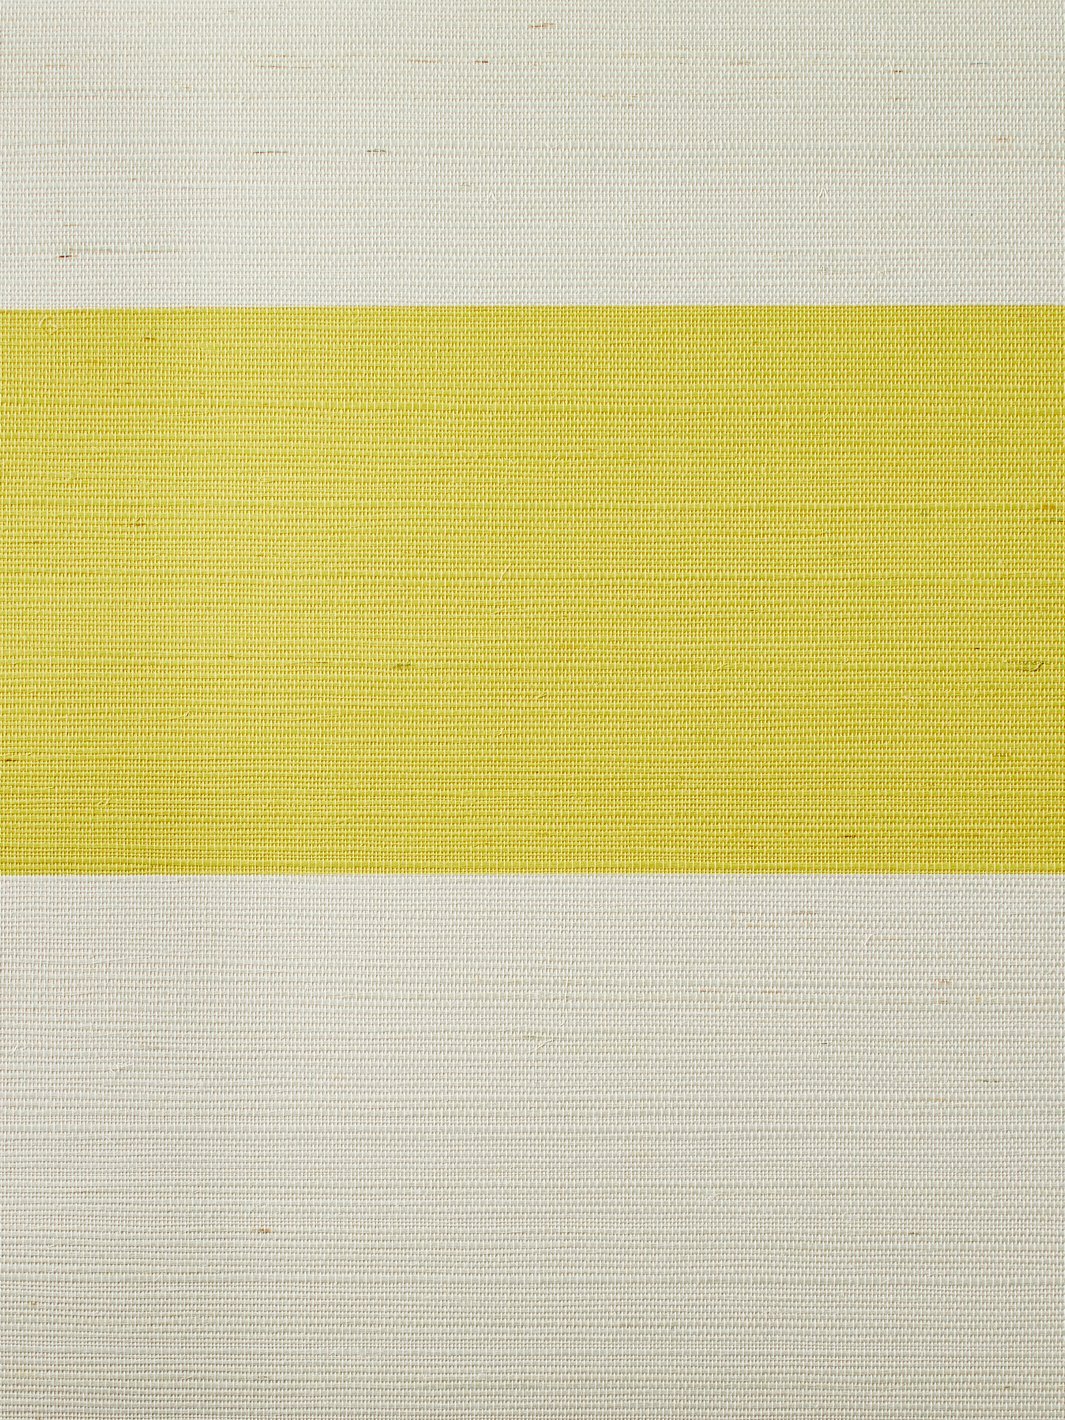 'Wide Stripe' Grasscloth' Wallpaper by Wallshoppe - Yellow